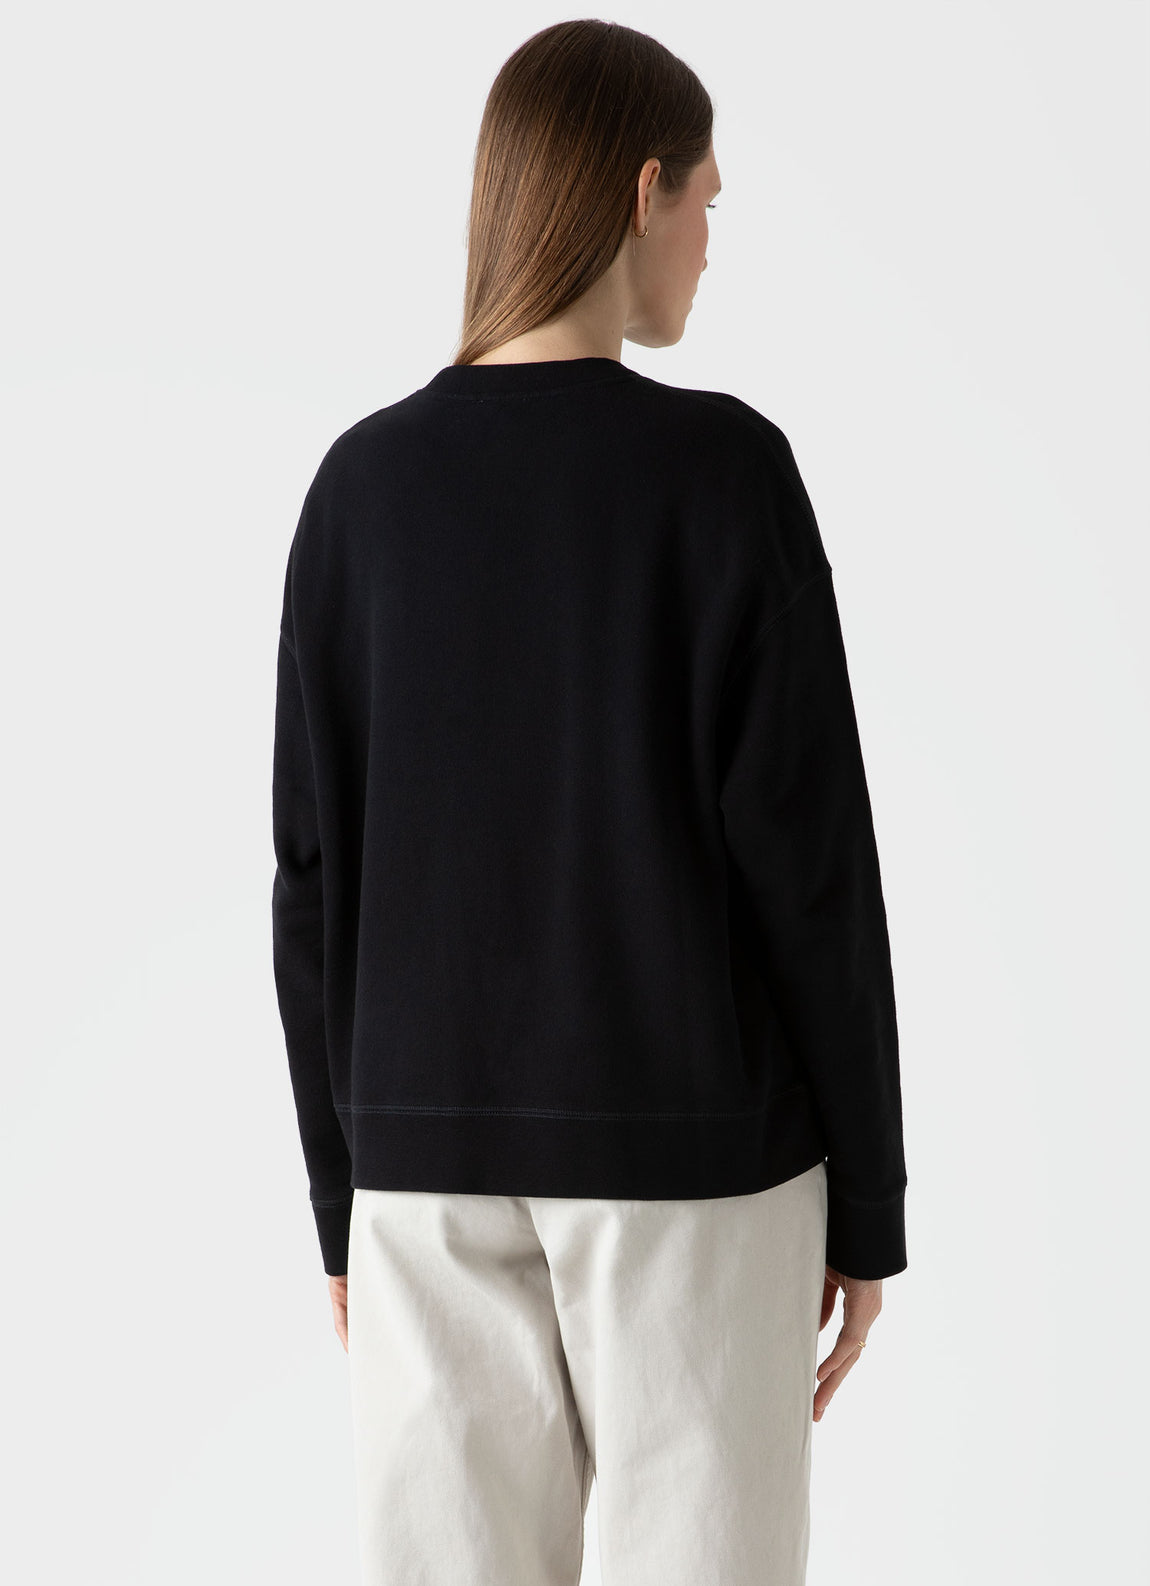 Women's Cotton Loopback Relaxed Sweatshirt in Black | Sunspel